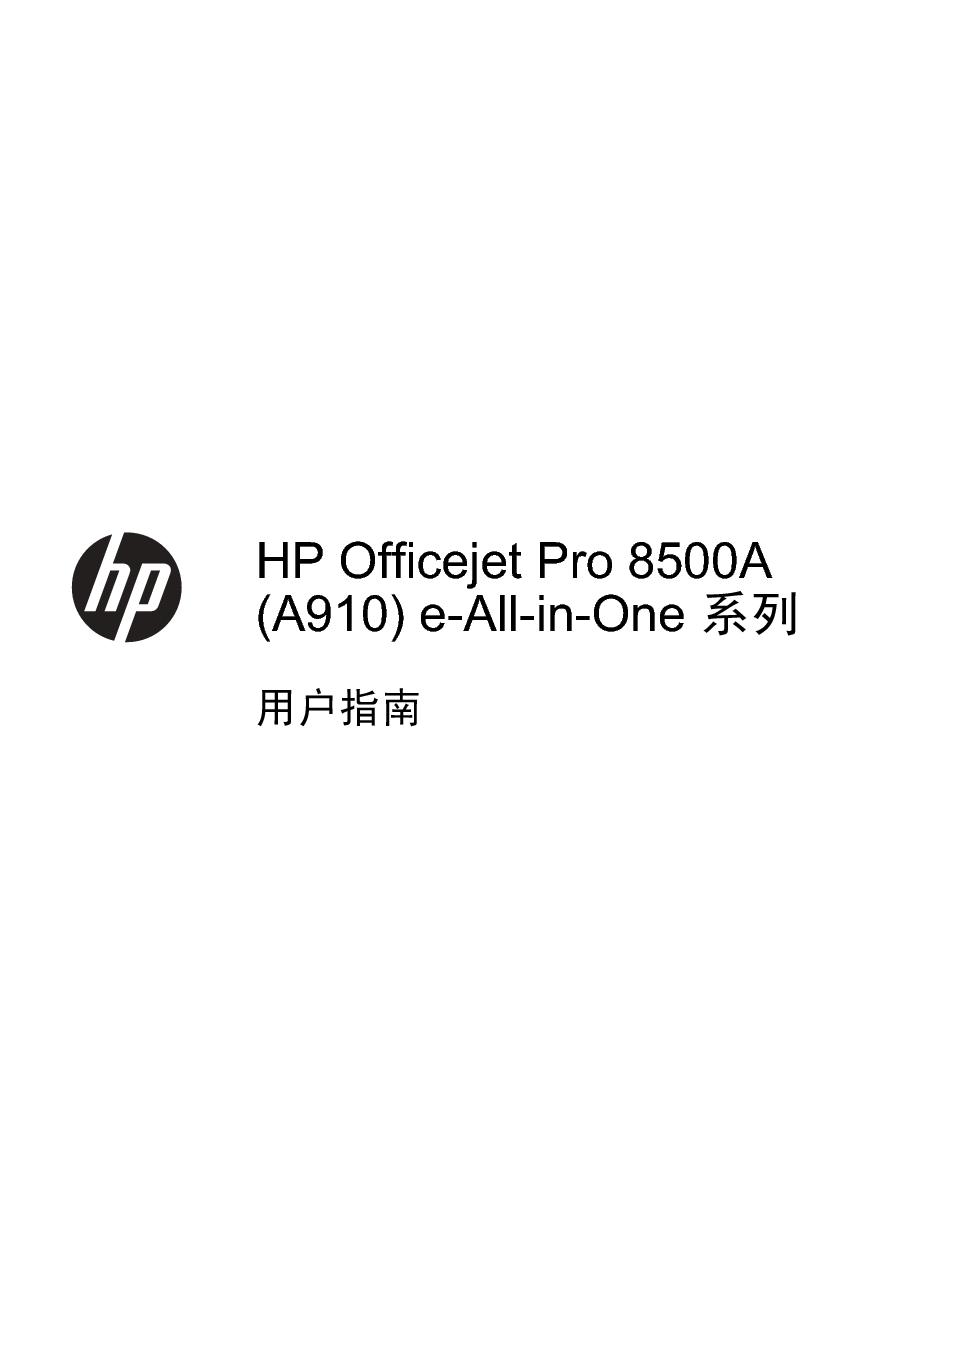 惠普 HP OfficeJet Pro 8500A 用户指南 第2页